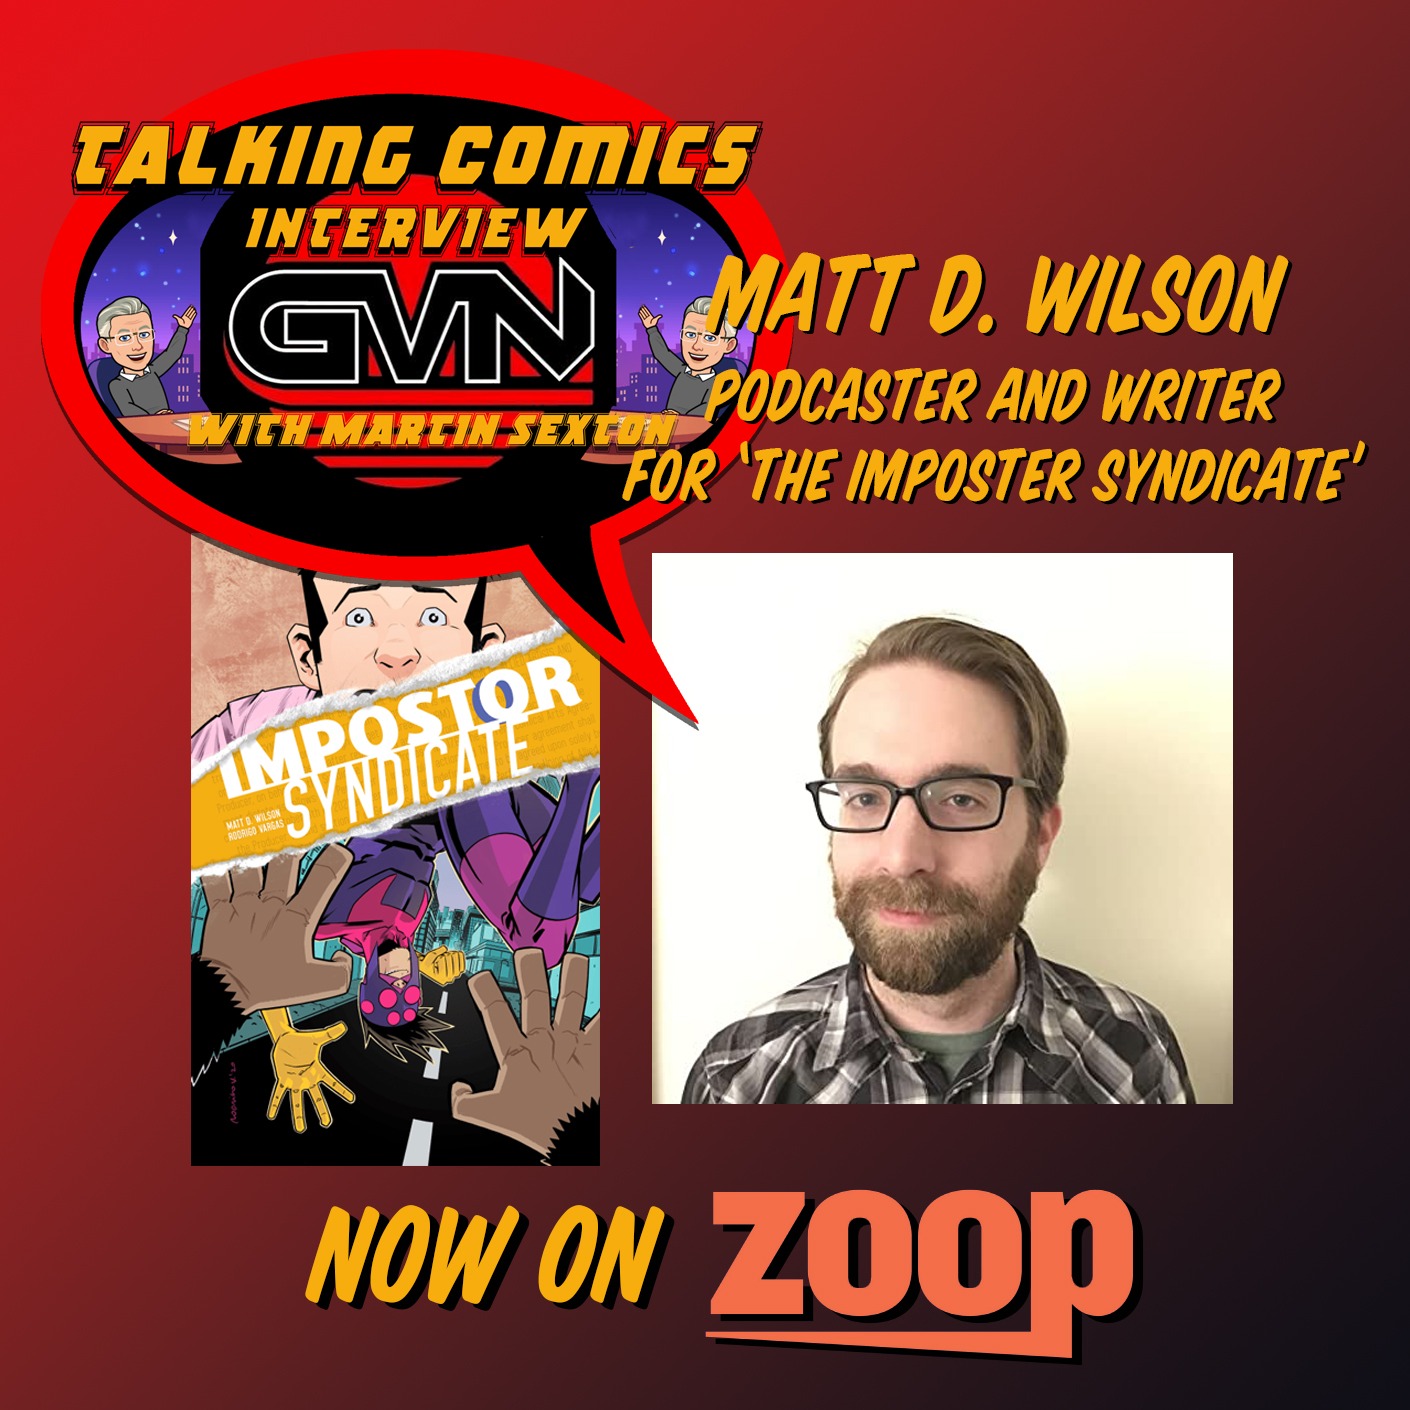 GVN Talking Comics Interview With Matt D. Wilson